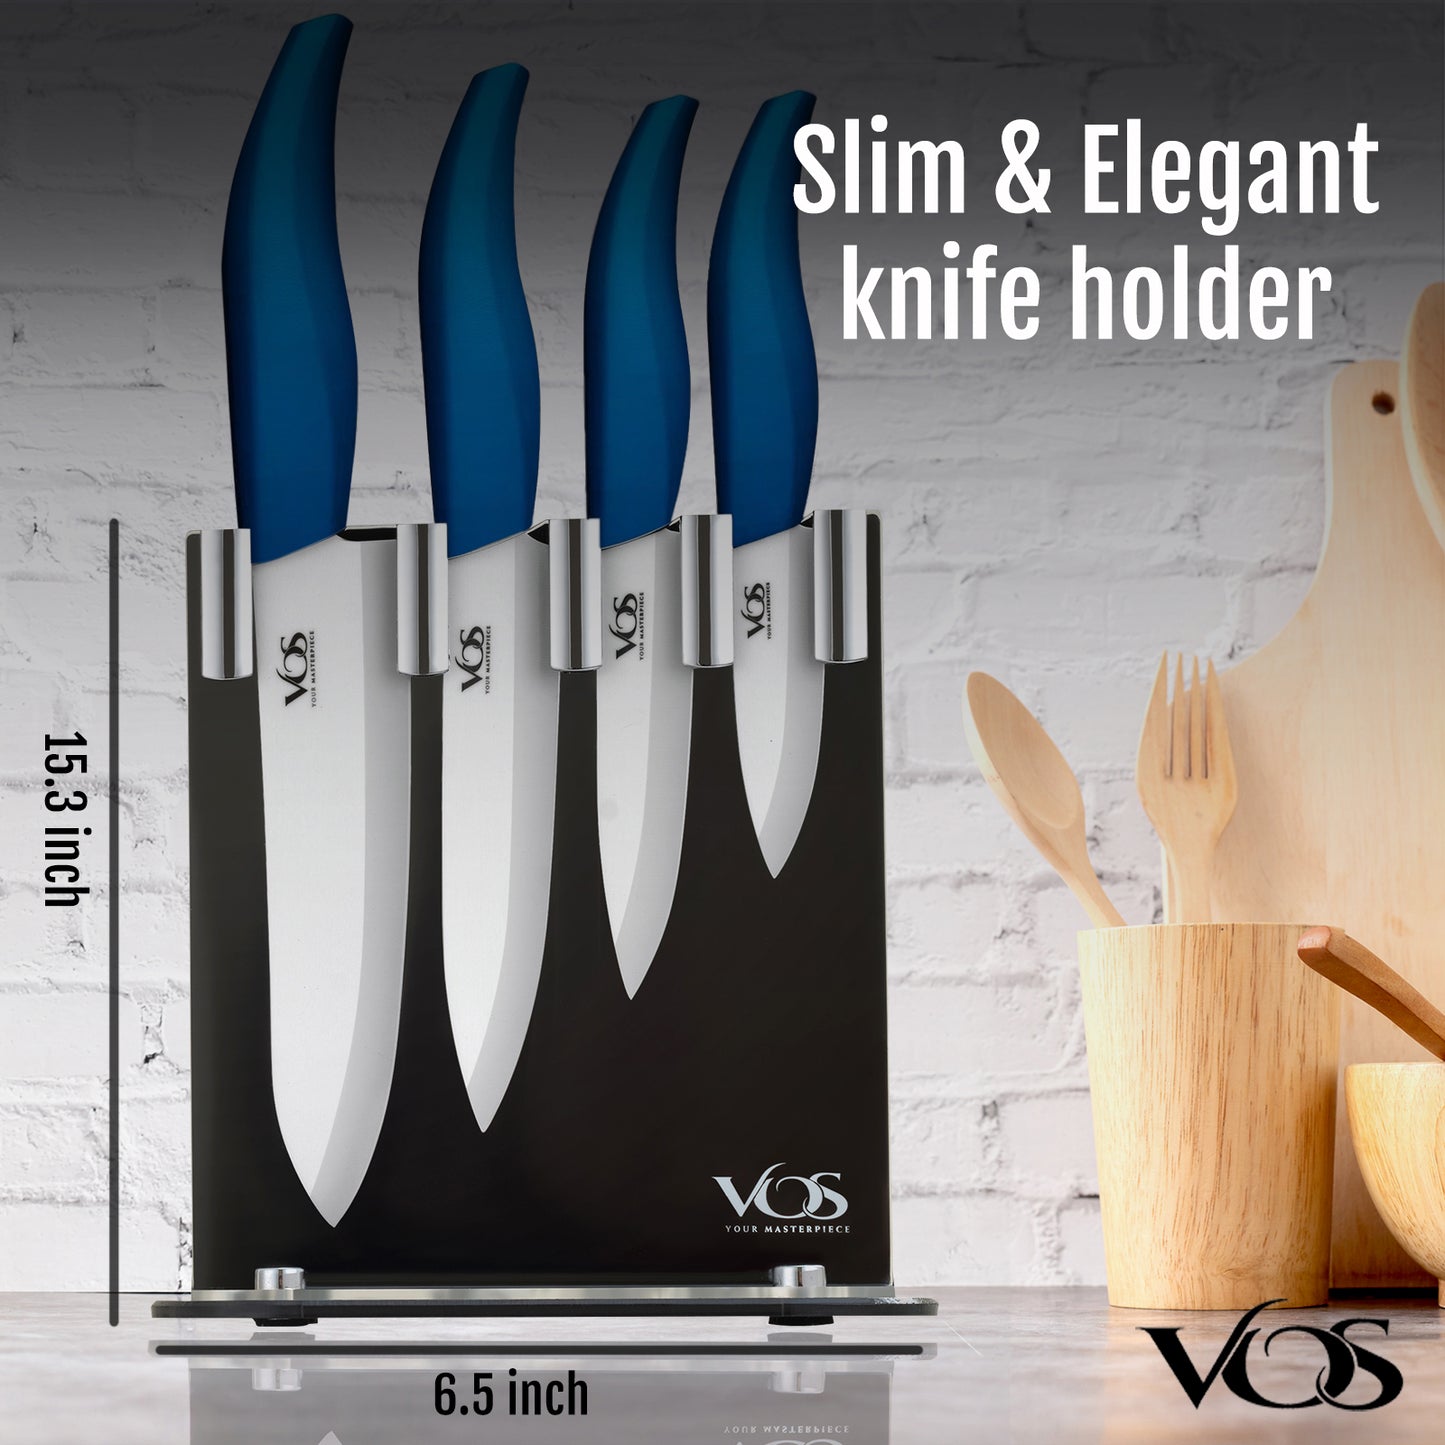 https://www.vosknife.com/cdn/shop/products/Vos-MetallicBlue-SlimandElegant.jpg?v=1645340426&width=1445